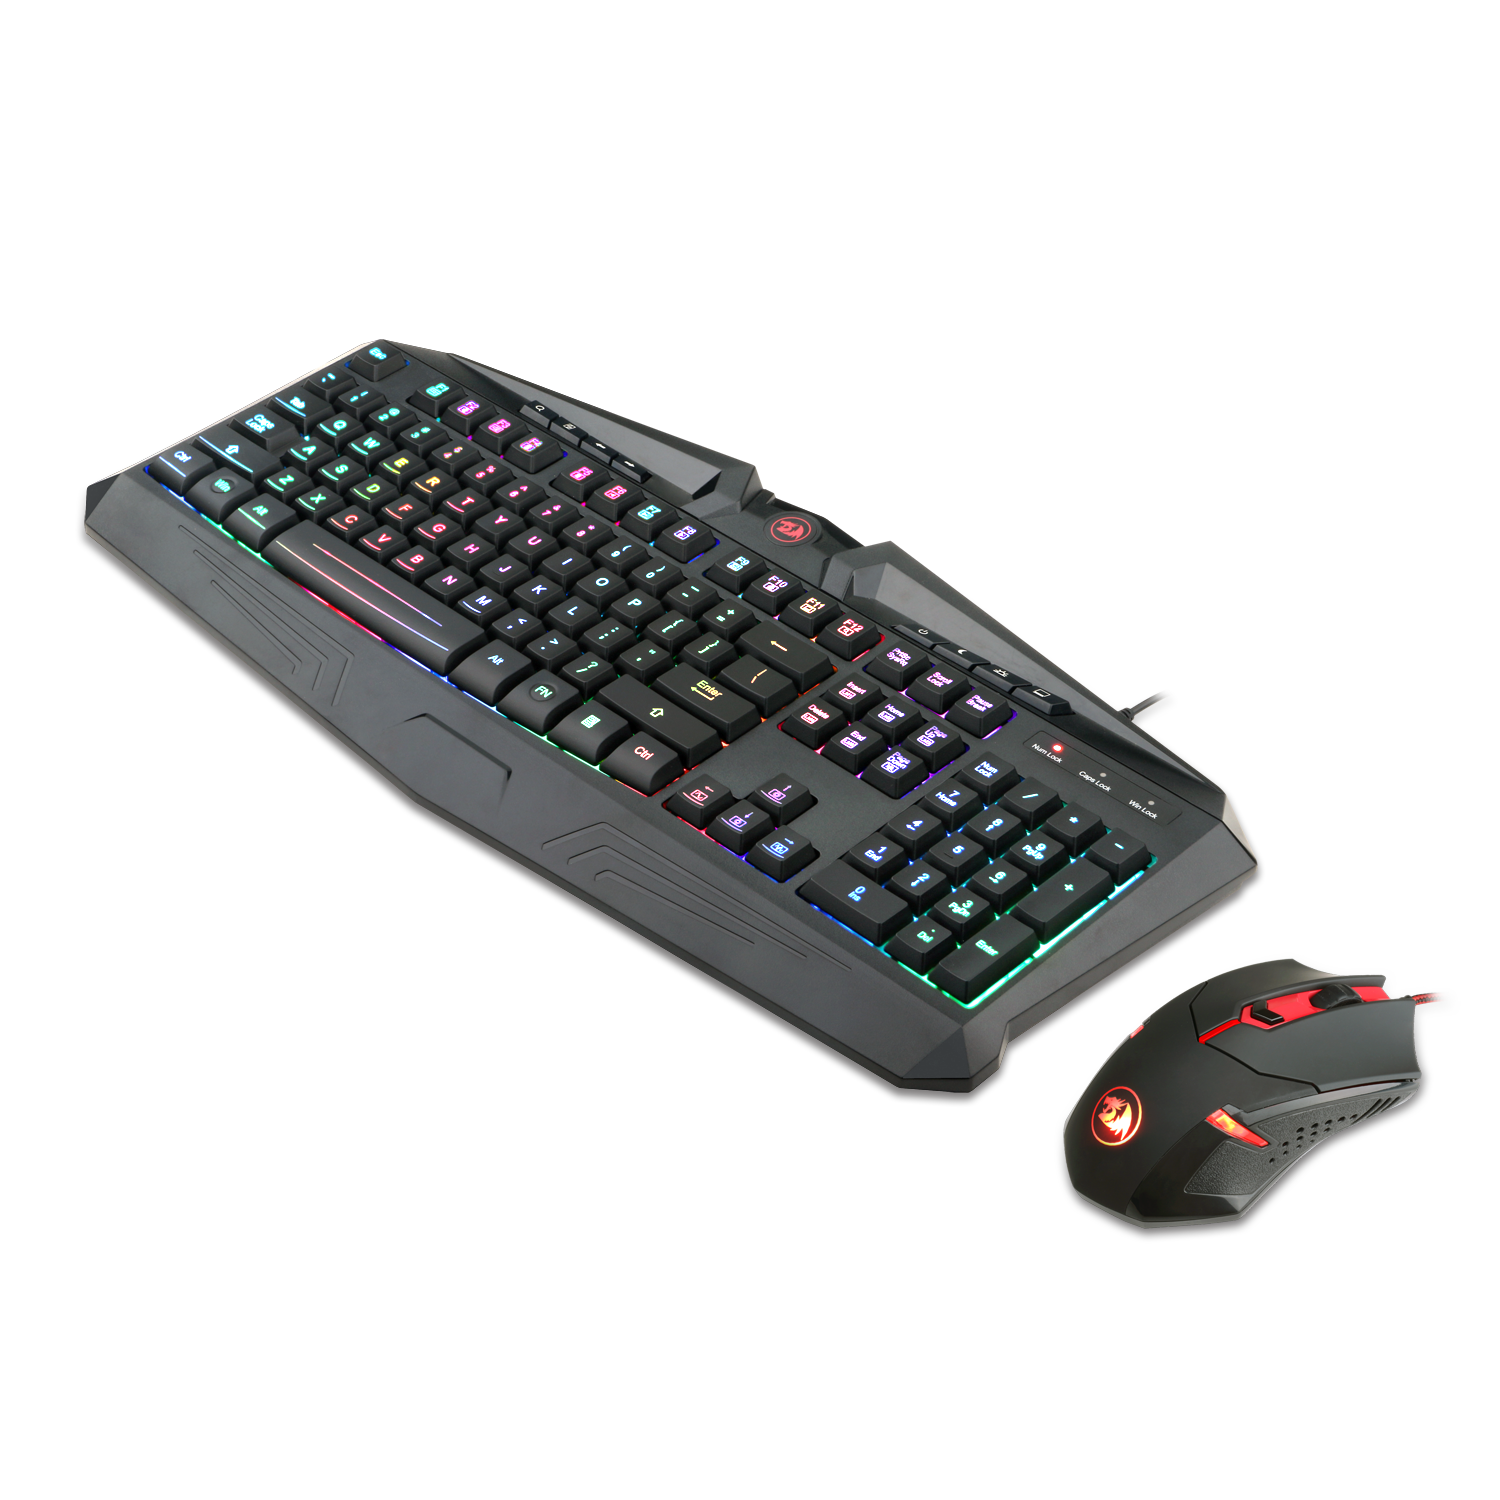 Keyboard - RedDragon gaming essentials bundle